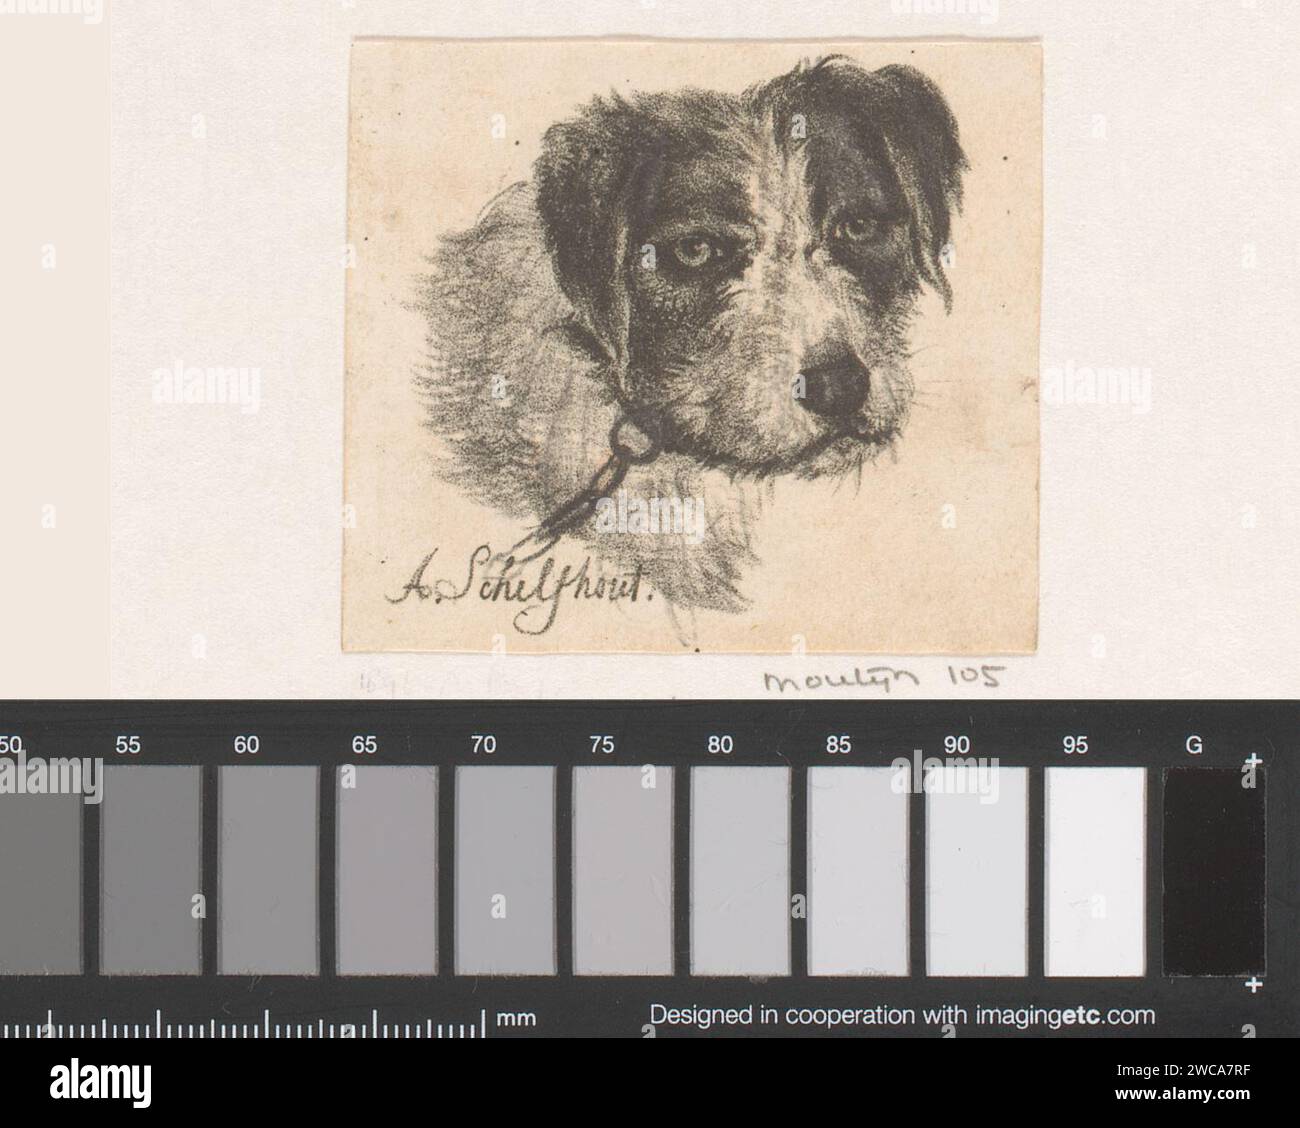 Dogkop, Andreas Schelfhout, 1813 - 1833 stampa il cane di carta dell'Aia Foto Stock